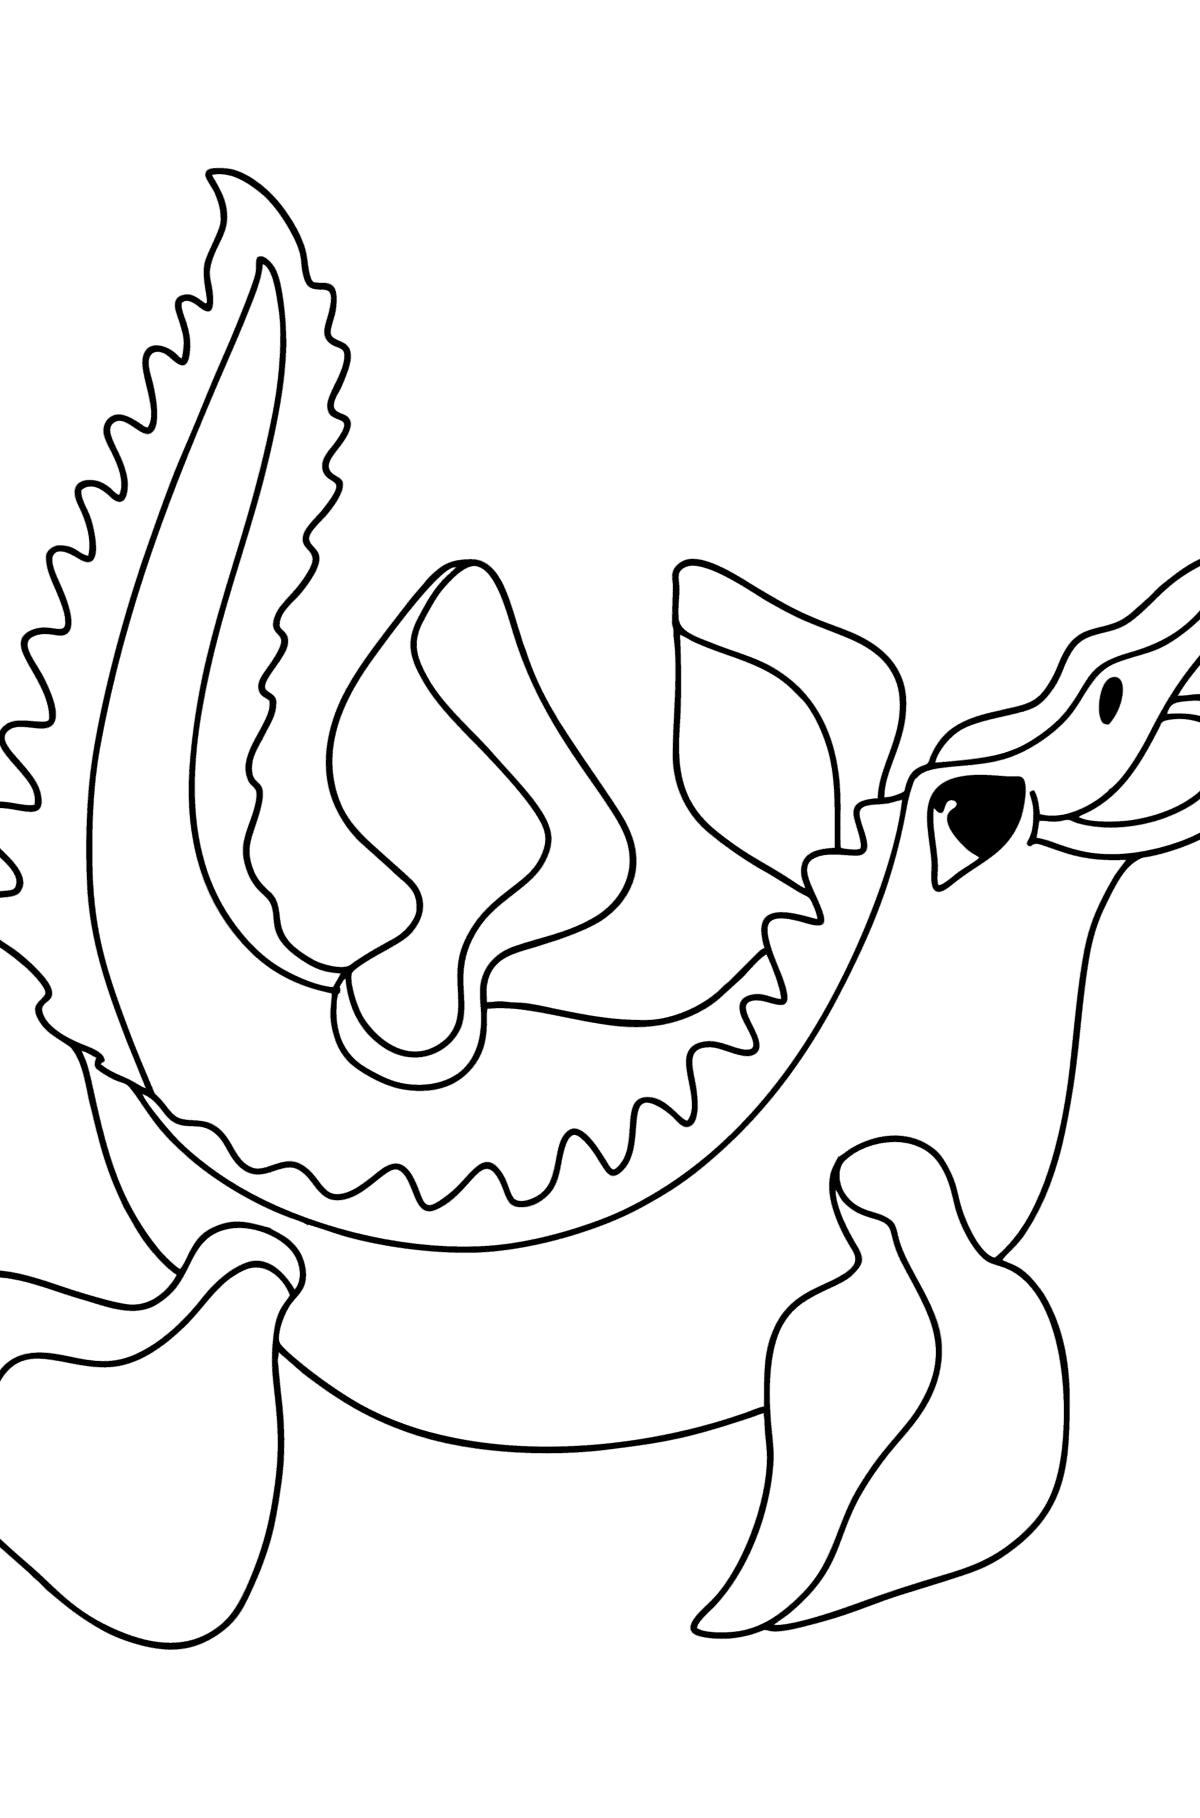 Boyama sayfası mosasaurus - Boyamalar çocuklar için